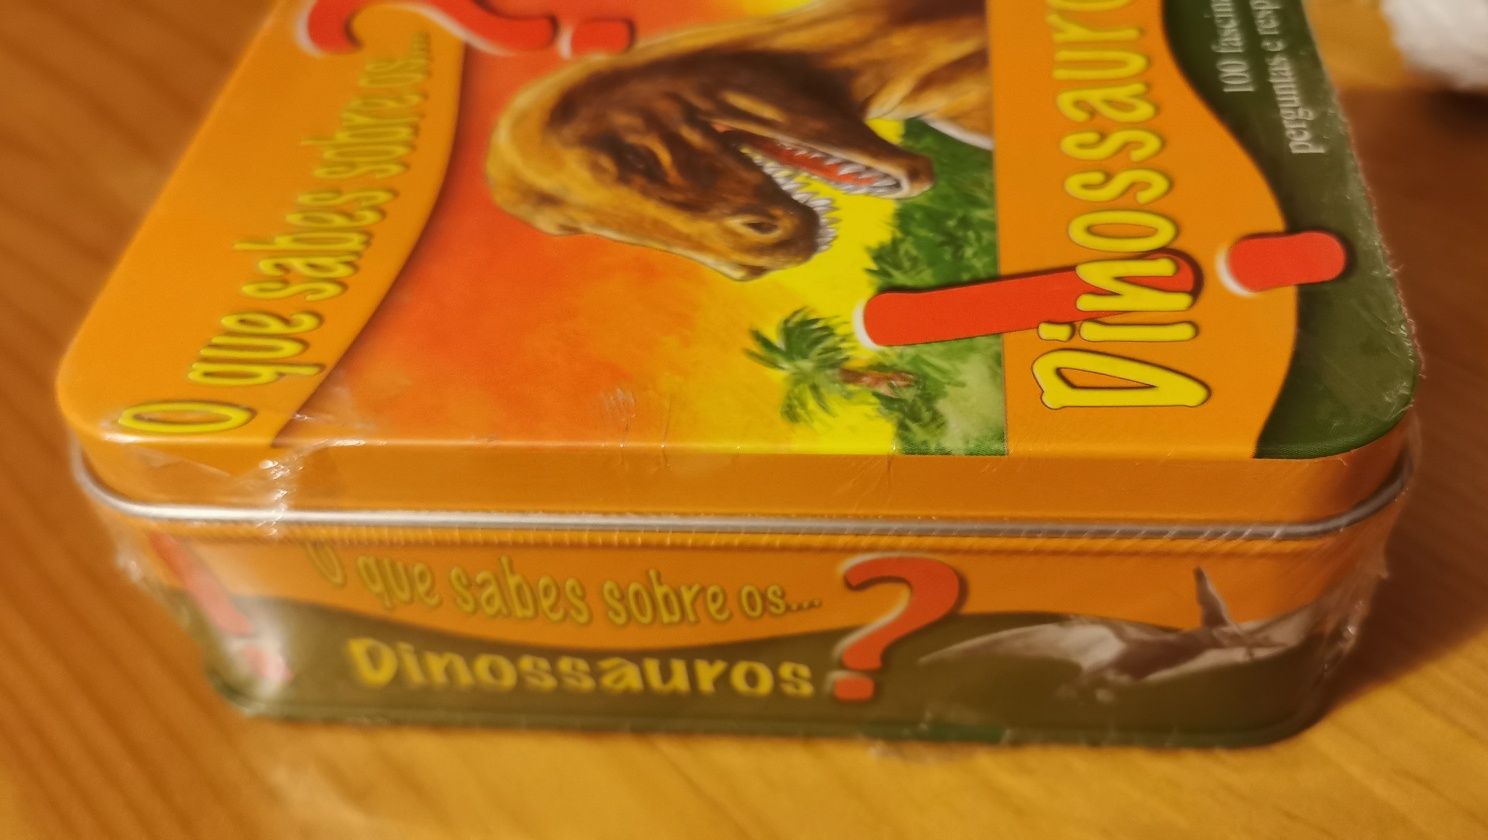 Jogo "O que sabes sobre Dinossauros NOVO ?"